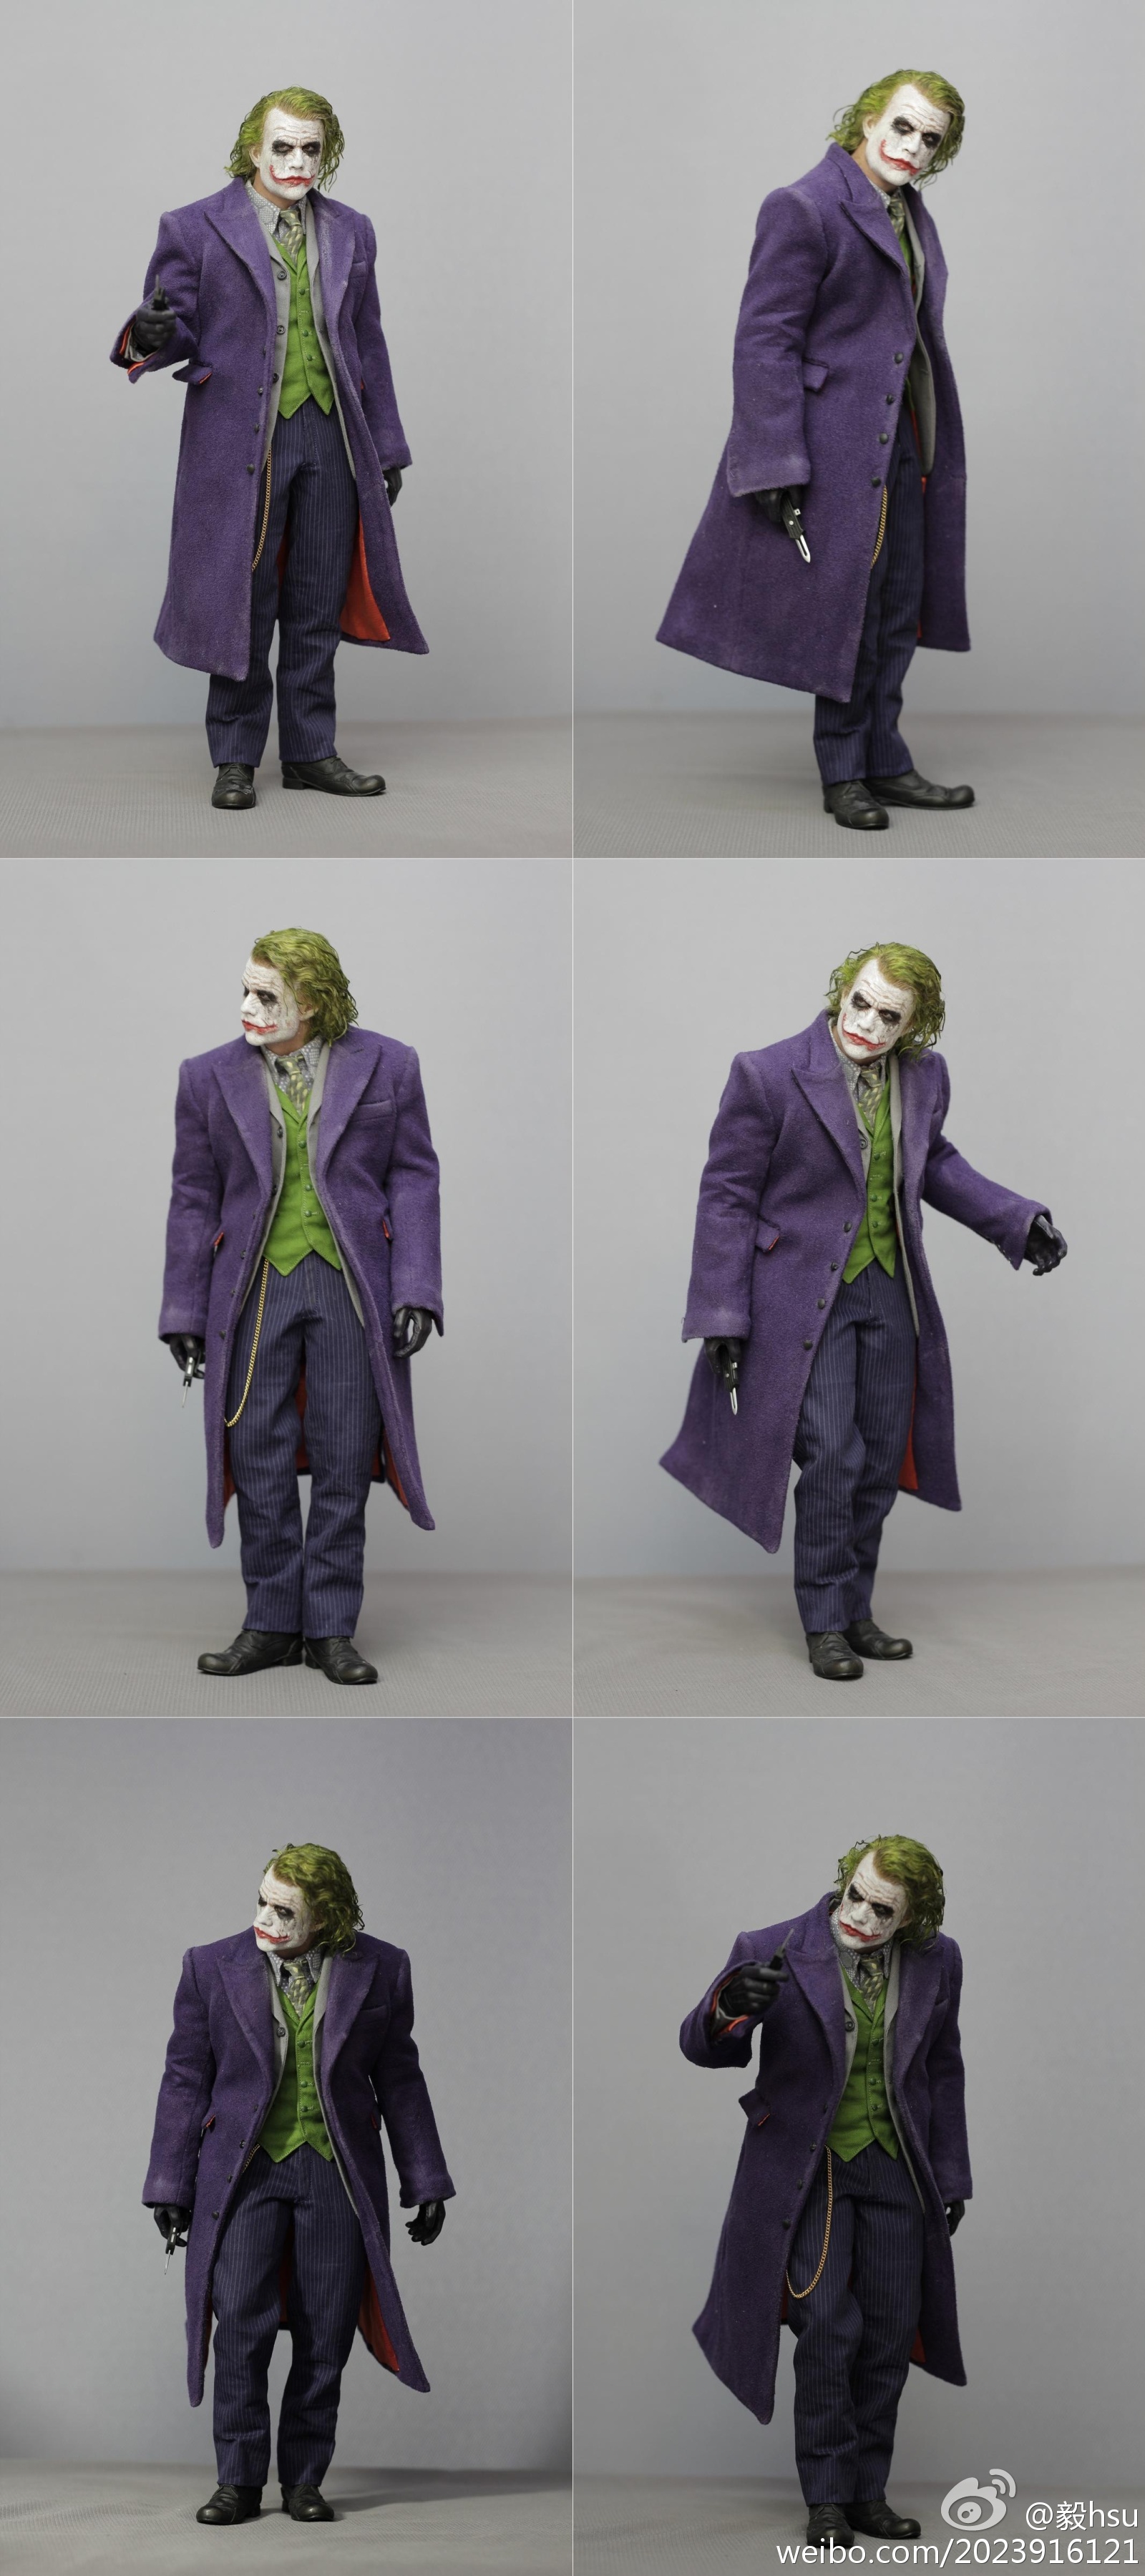 [Customs] Tópico Oficial: Joker / Hot Toys - Página 2 78a28259gw1dk8evw3fjij